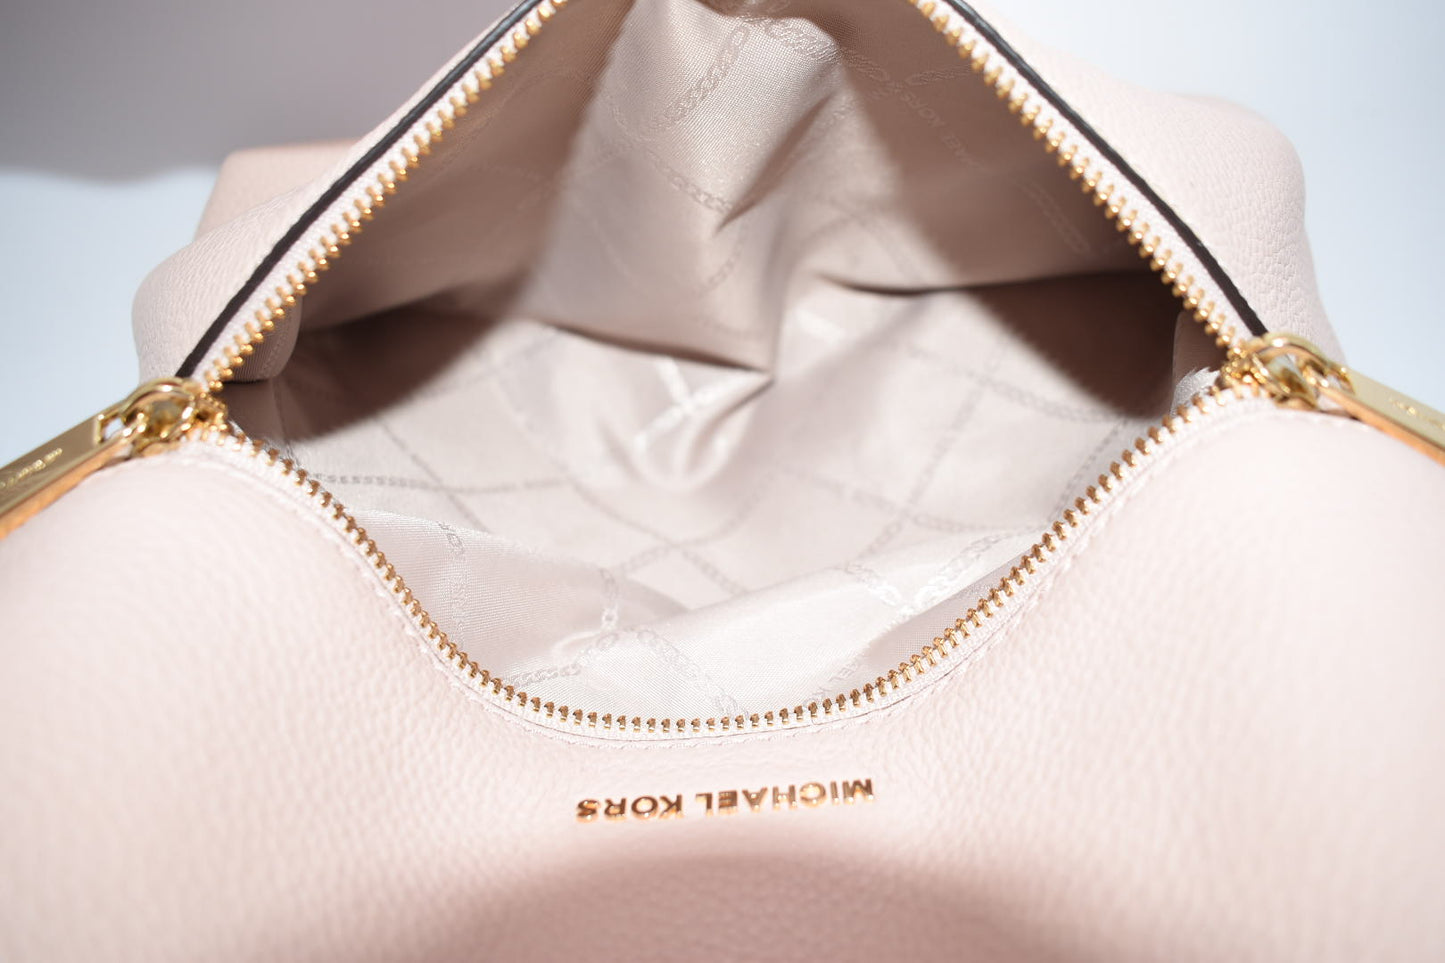 Michael Kors Pebbled Leather Rhea Medium Slim Backpack in Baby Pink